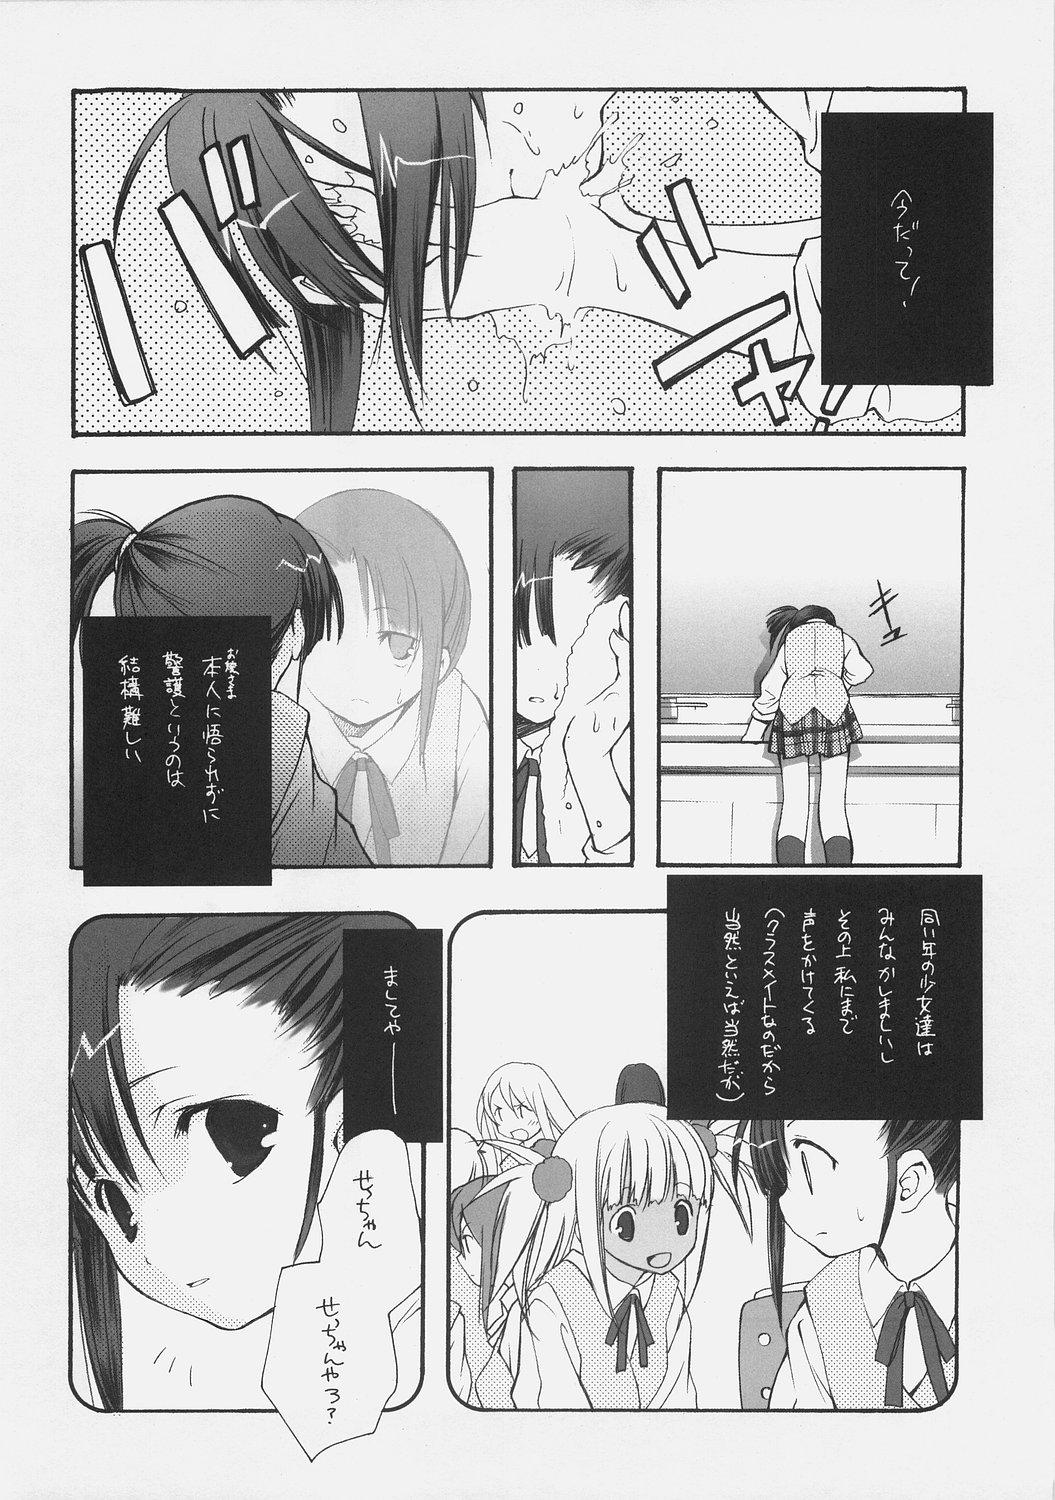 Pregnant KonoSetsu - Mahou sensei negima Star - Page 7